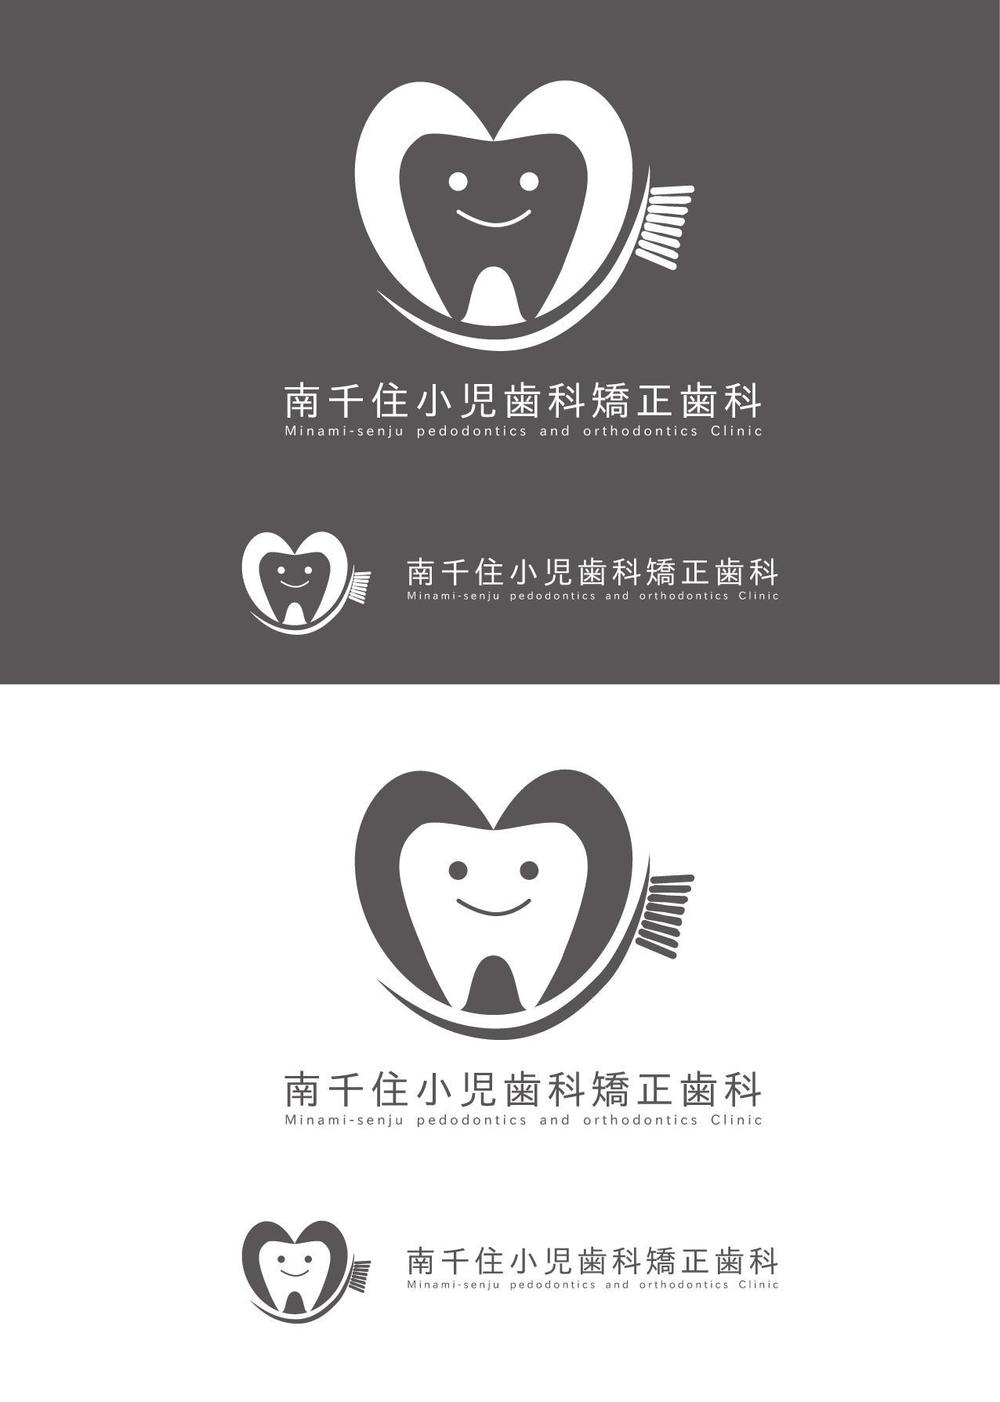 新規開業する歯科医院のロゴマーク